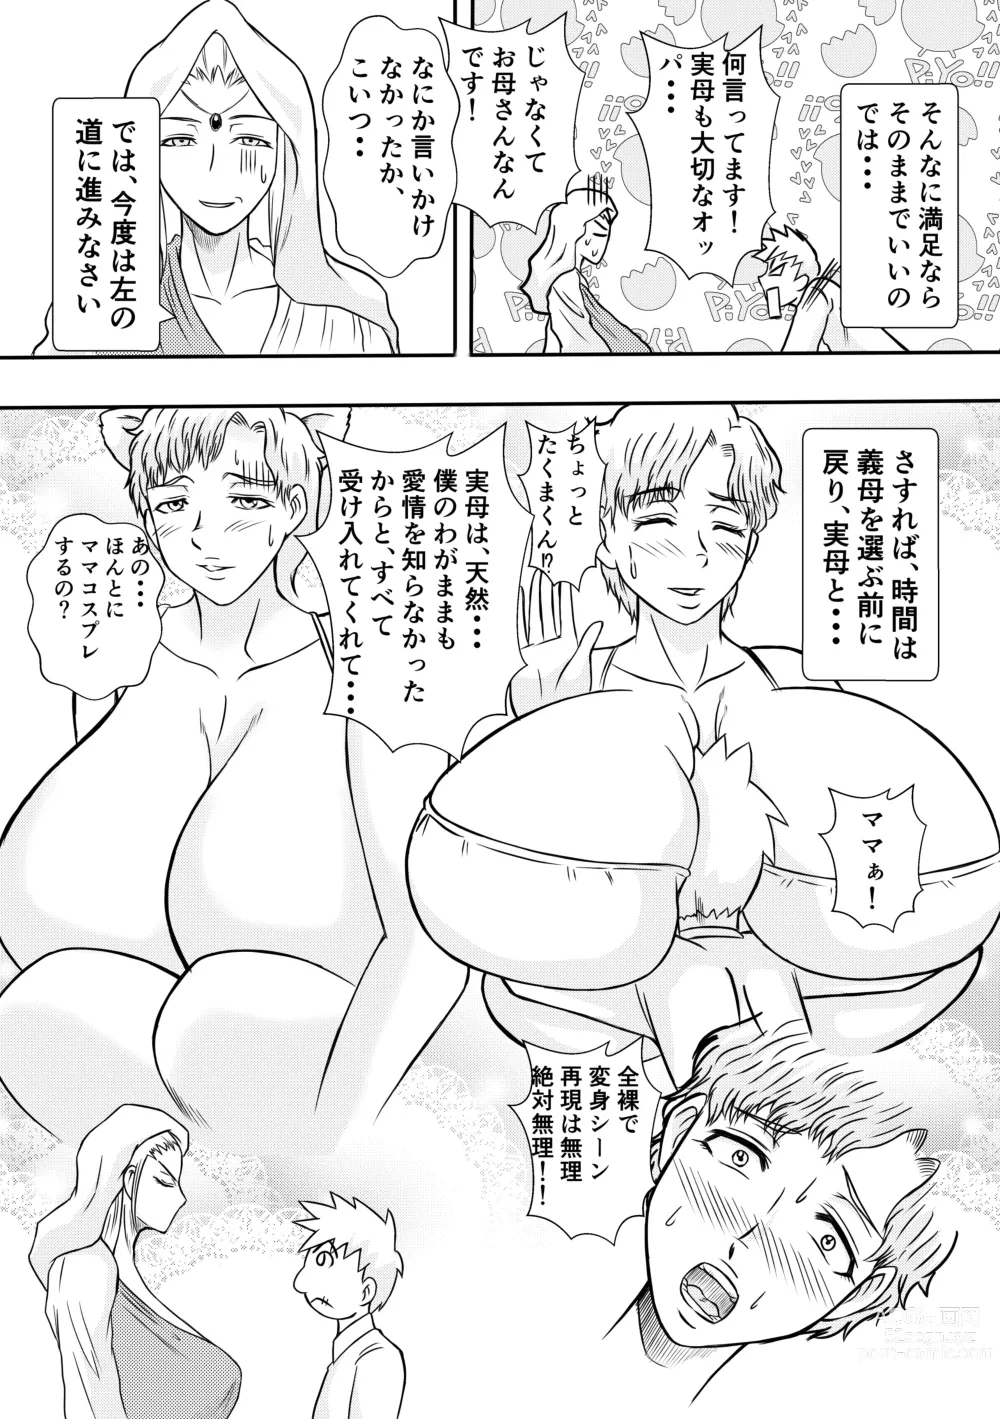 Page 12 of doujinshi Henna Hanashi... Hito no Jinsei Owarai Gekijou